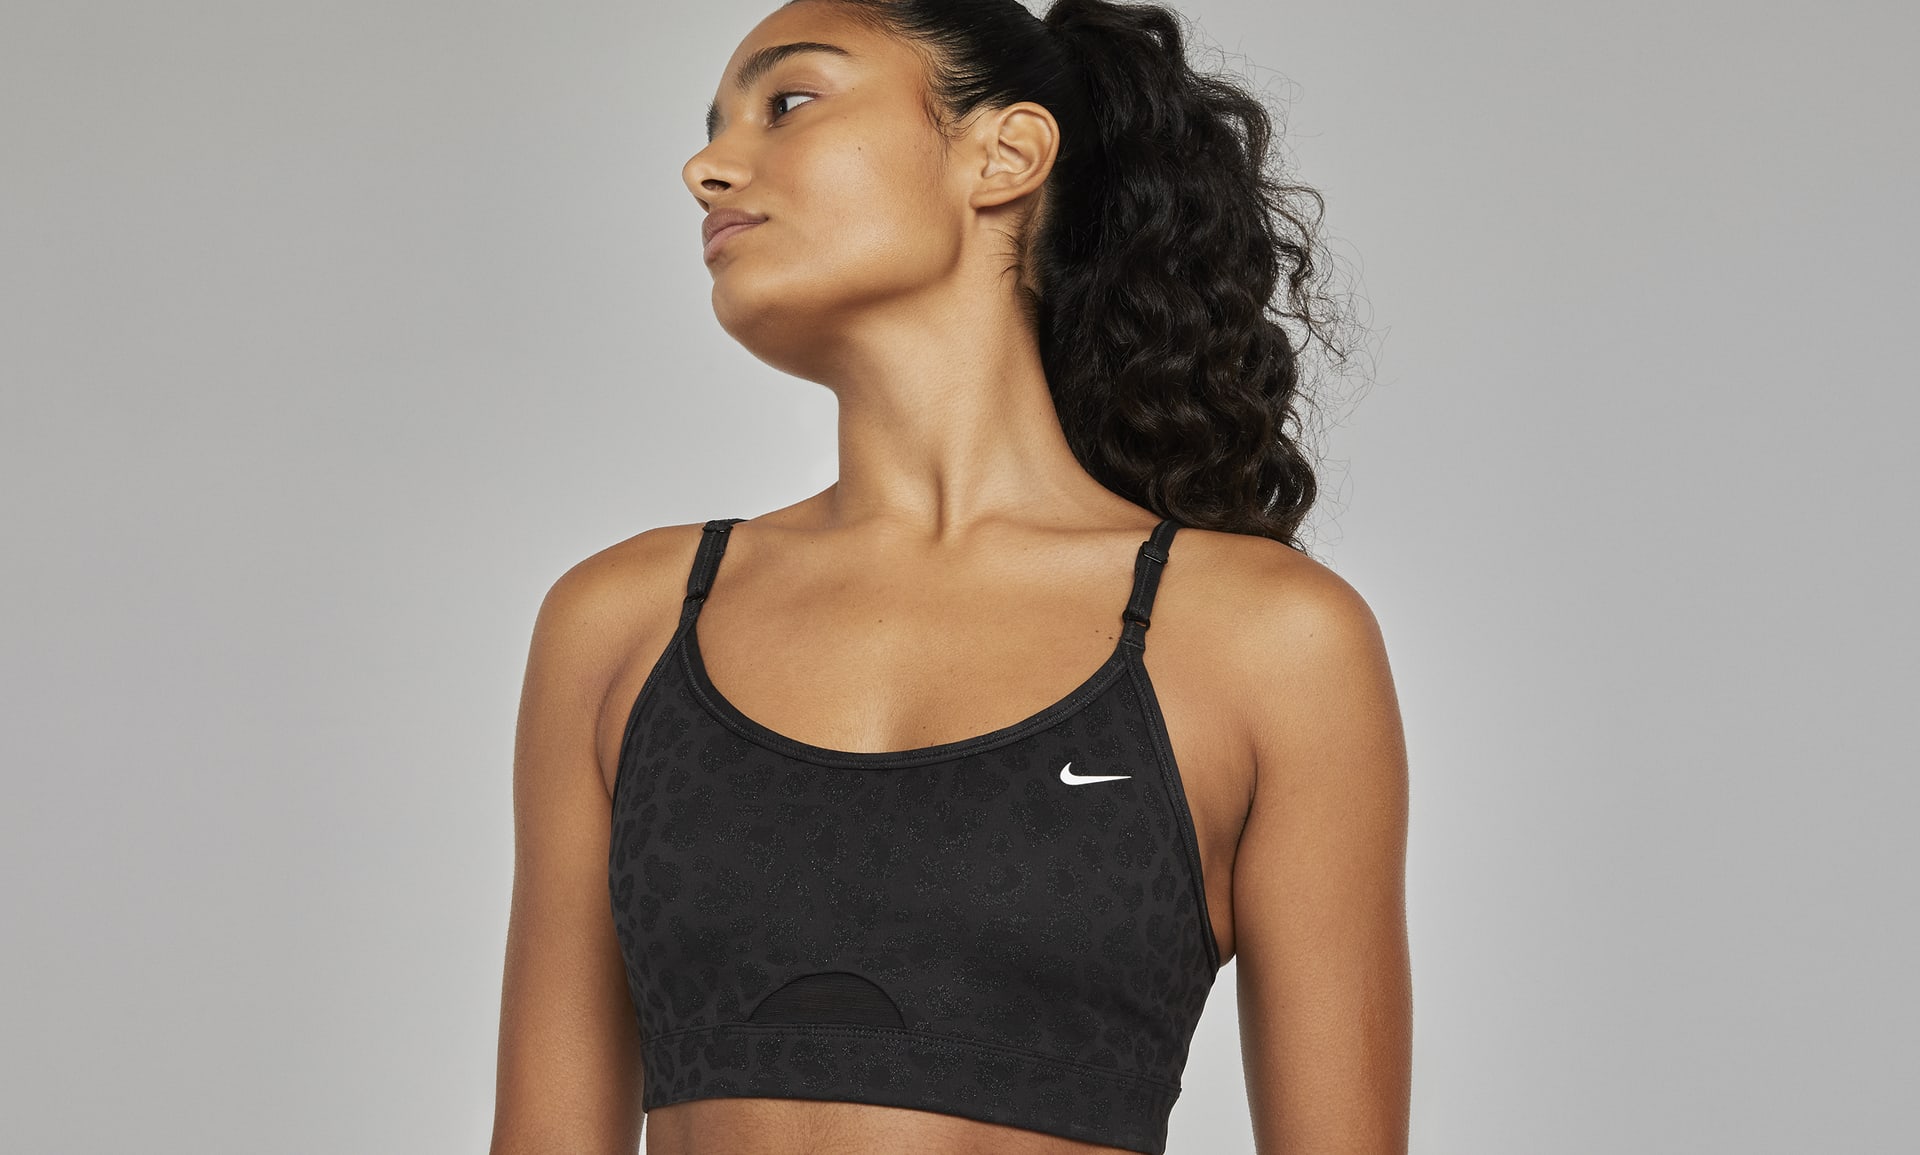 Nike Women's Dri-Fit Indy Glitter Sports Bra Black Glitter Leopard Print  Medium